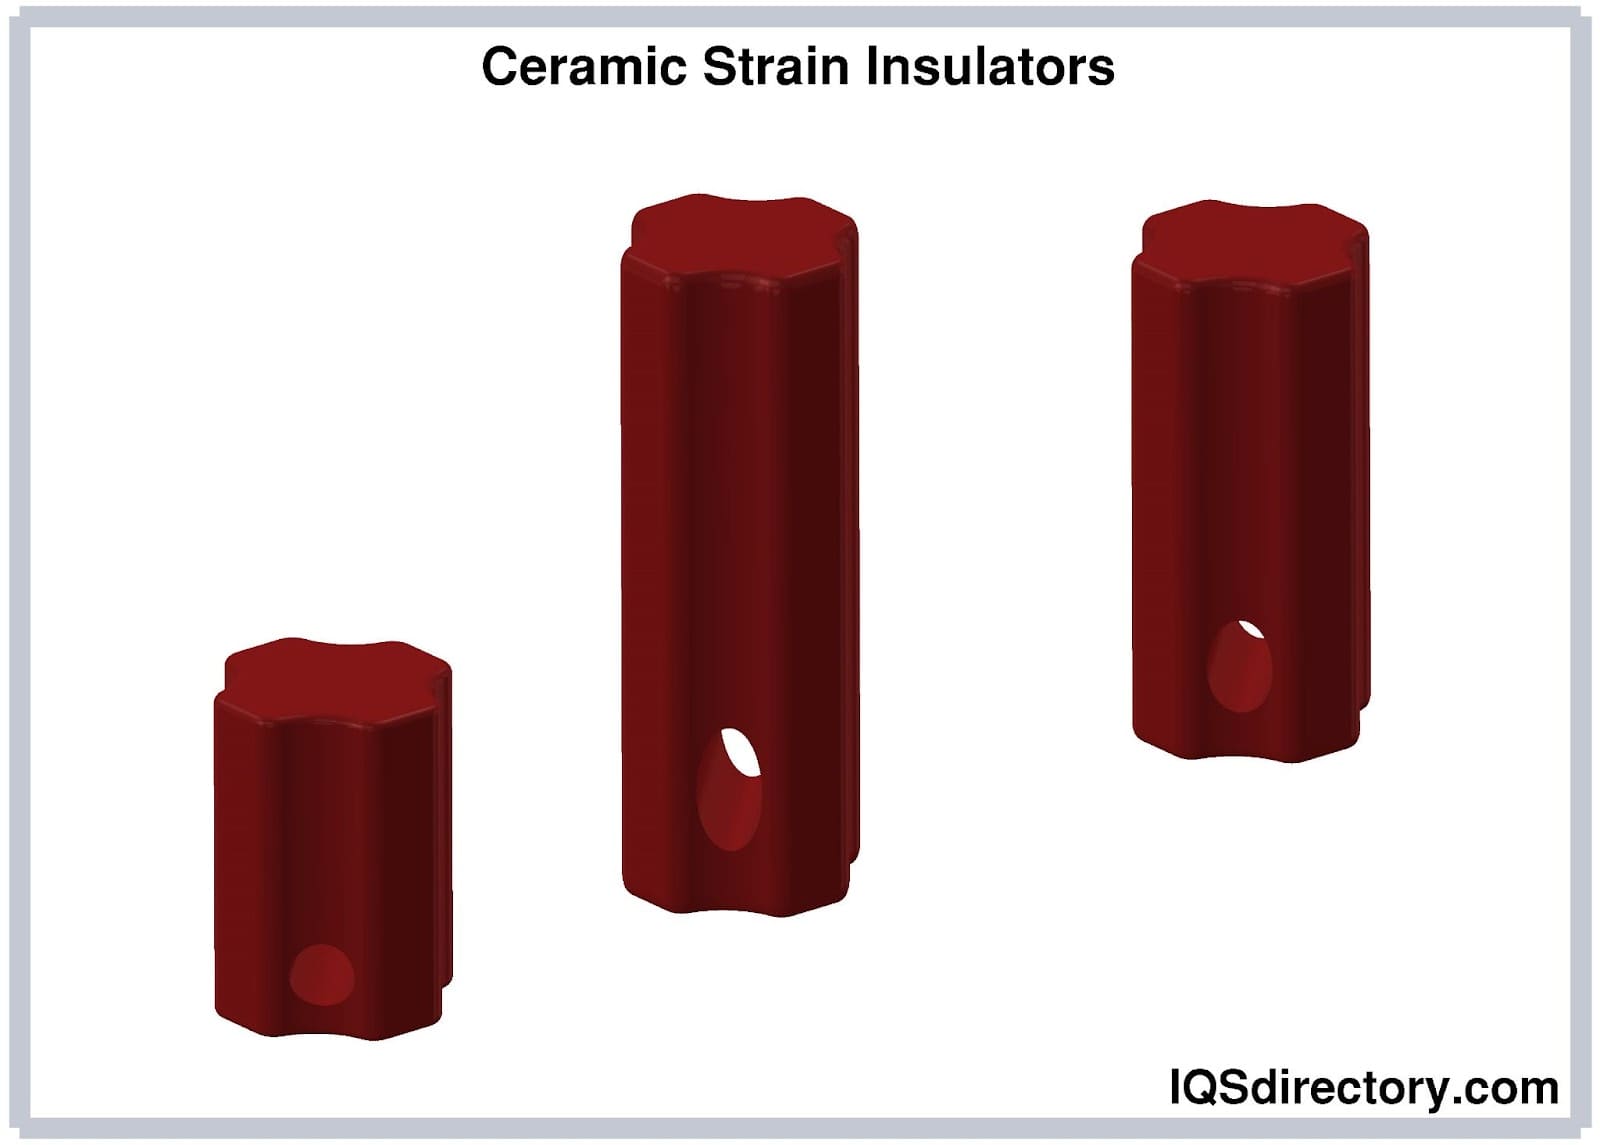 Ceramic Strain Insulators